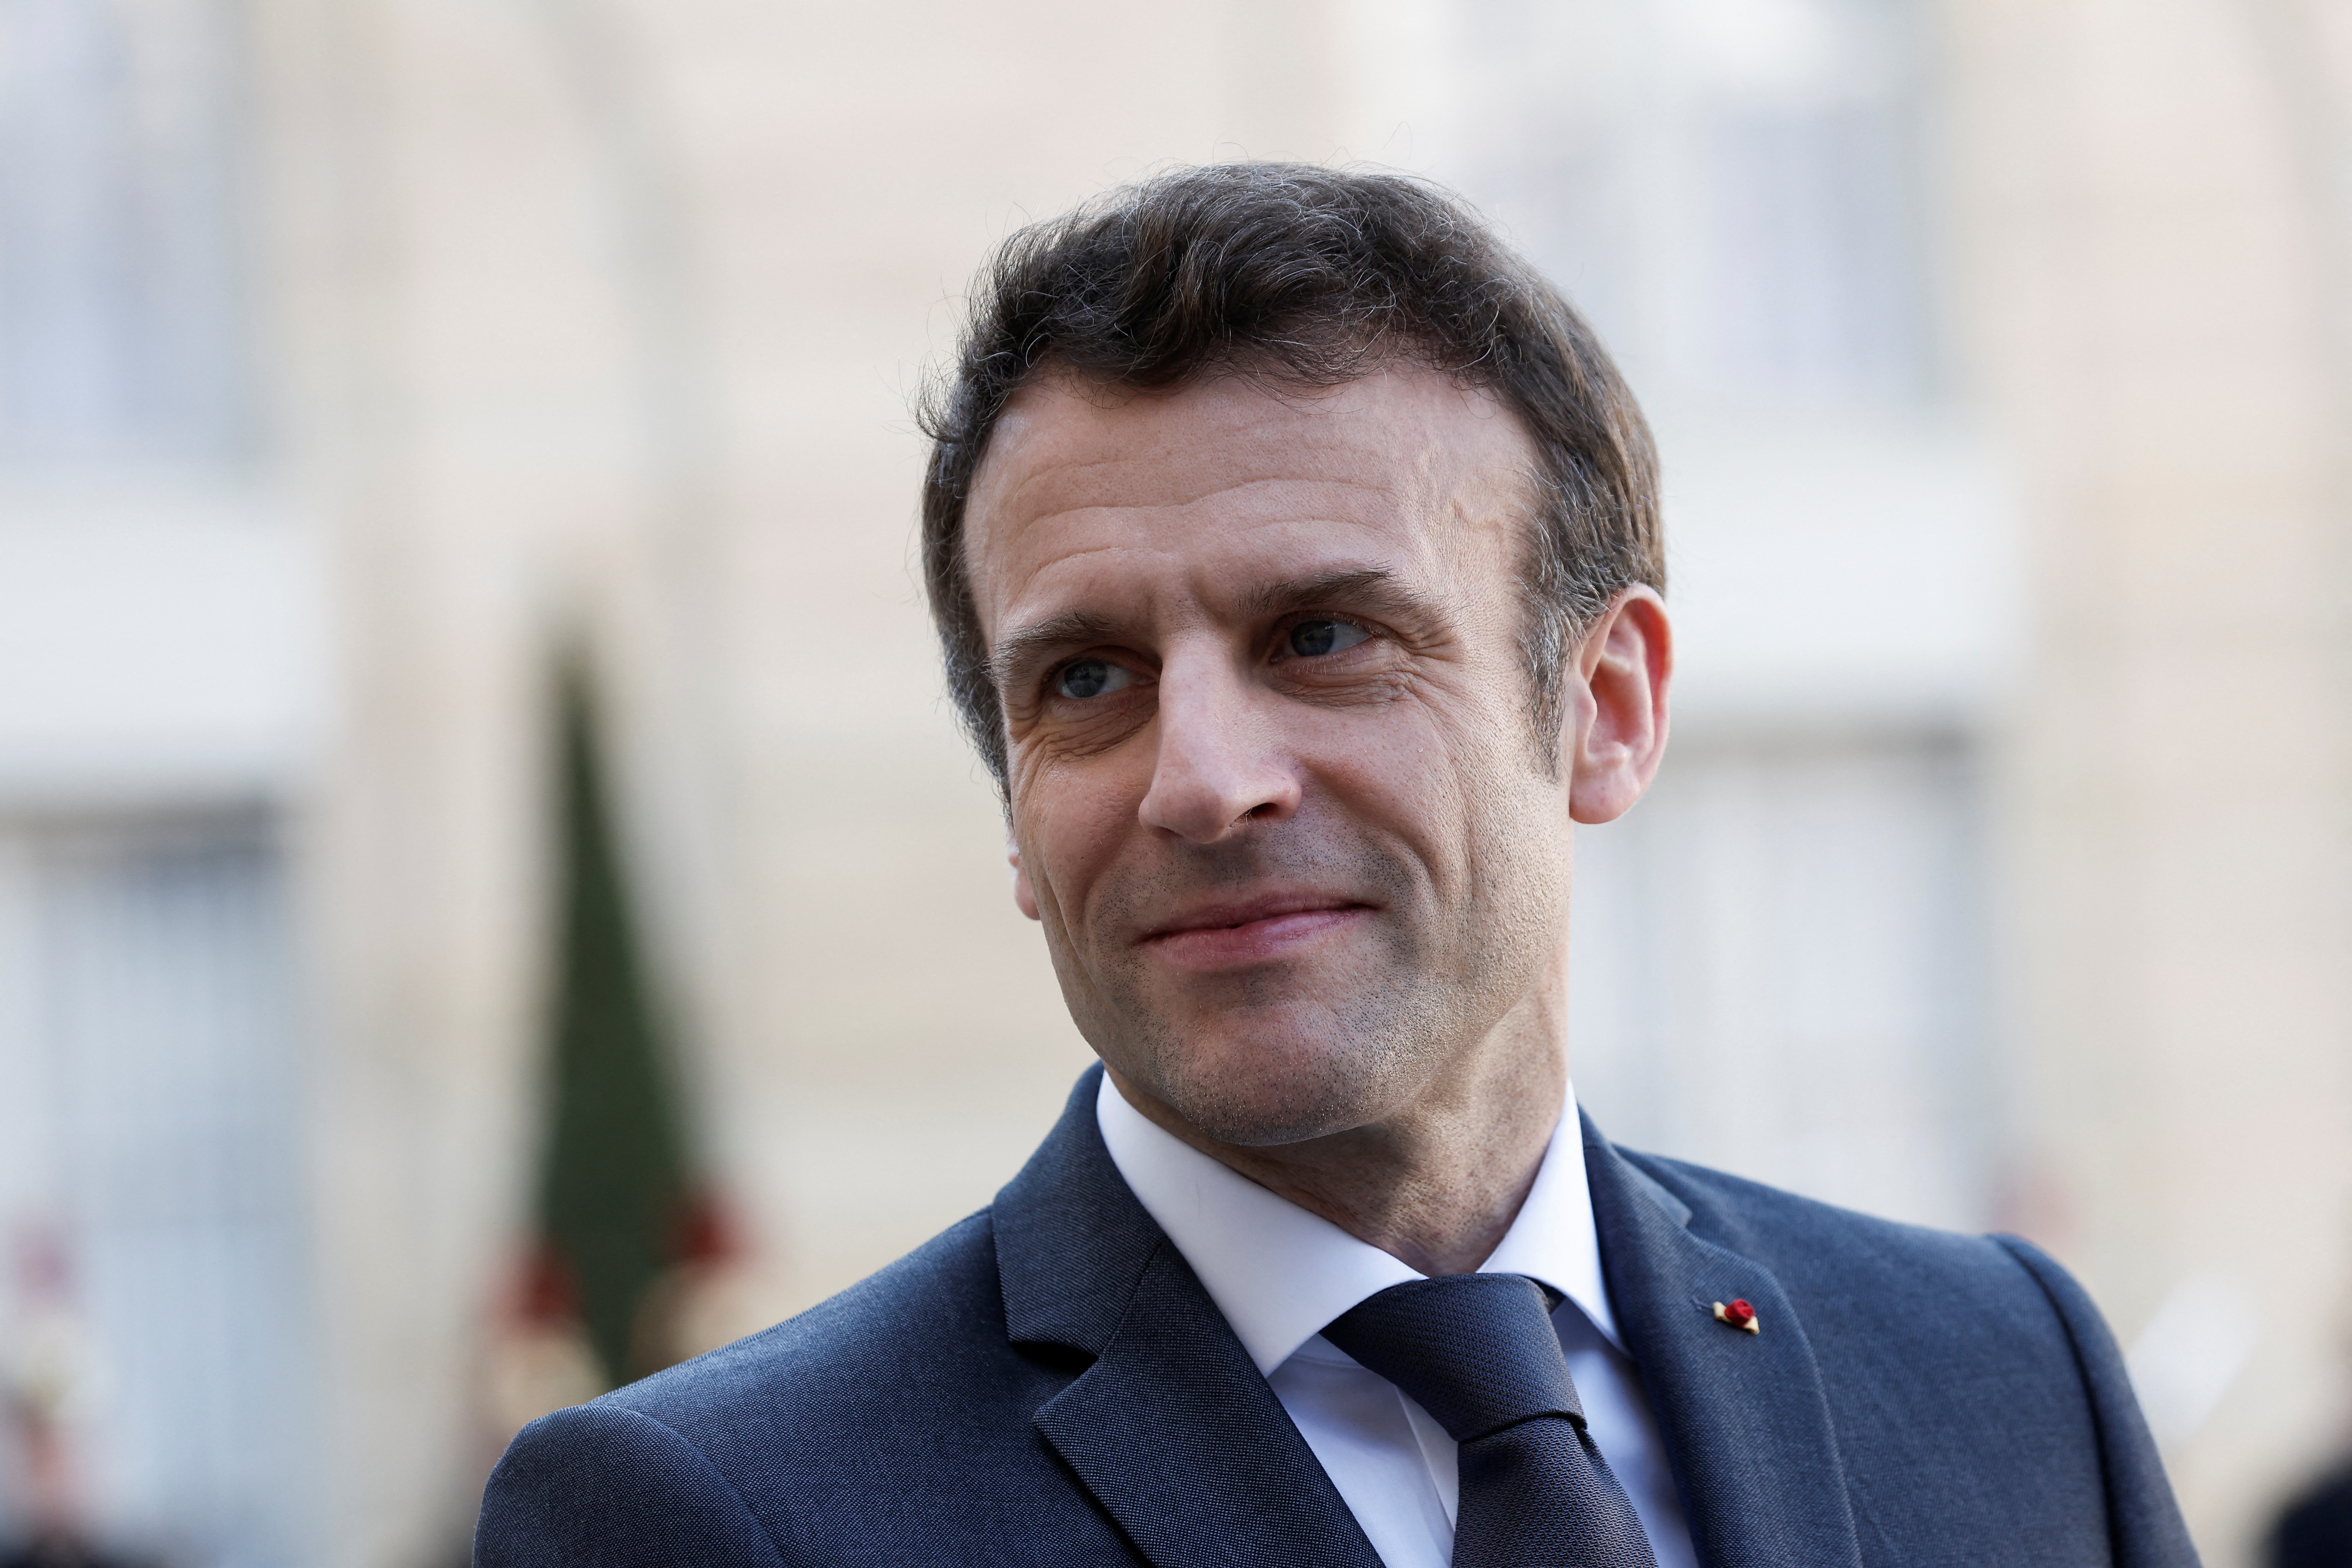 Présidentielle 2022 : les entrepreneurs plébiscitent Macron à 52%, largement devant Zemmour, Mélenchon et Pécresse